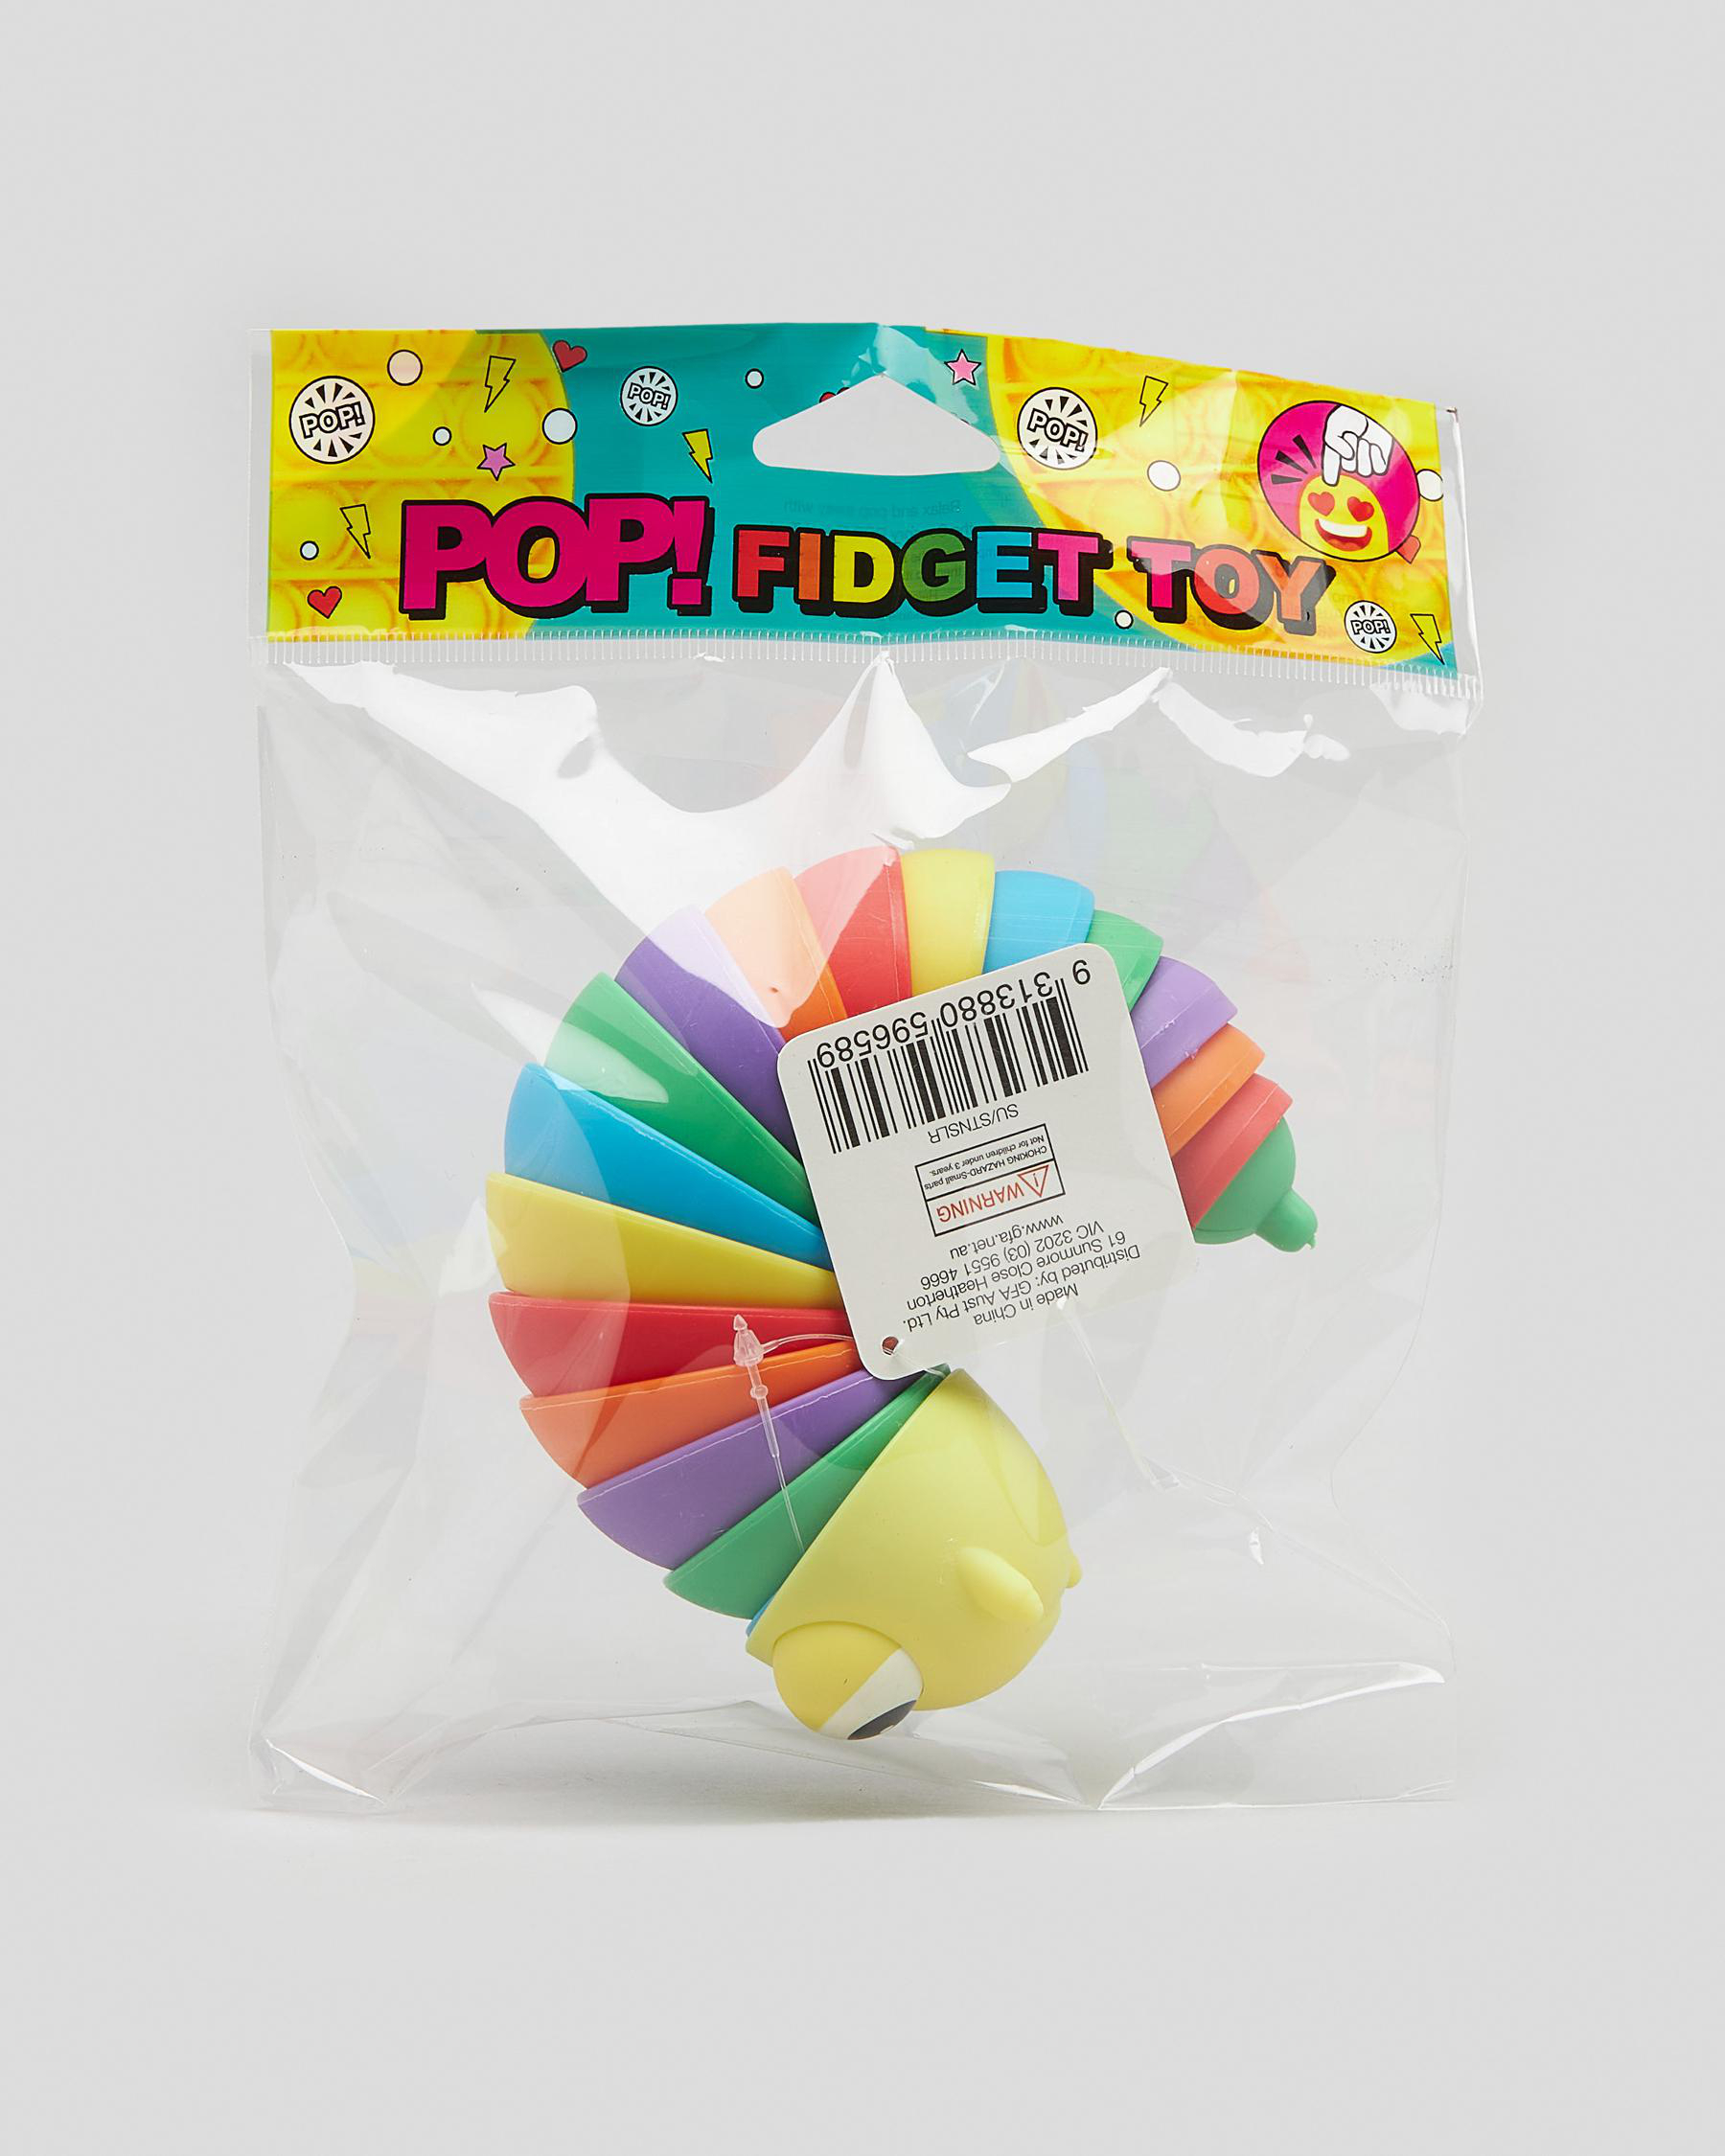 Pop fidget toy | stocking stuffers little girls